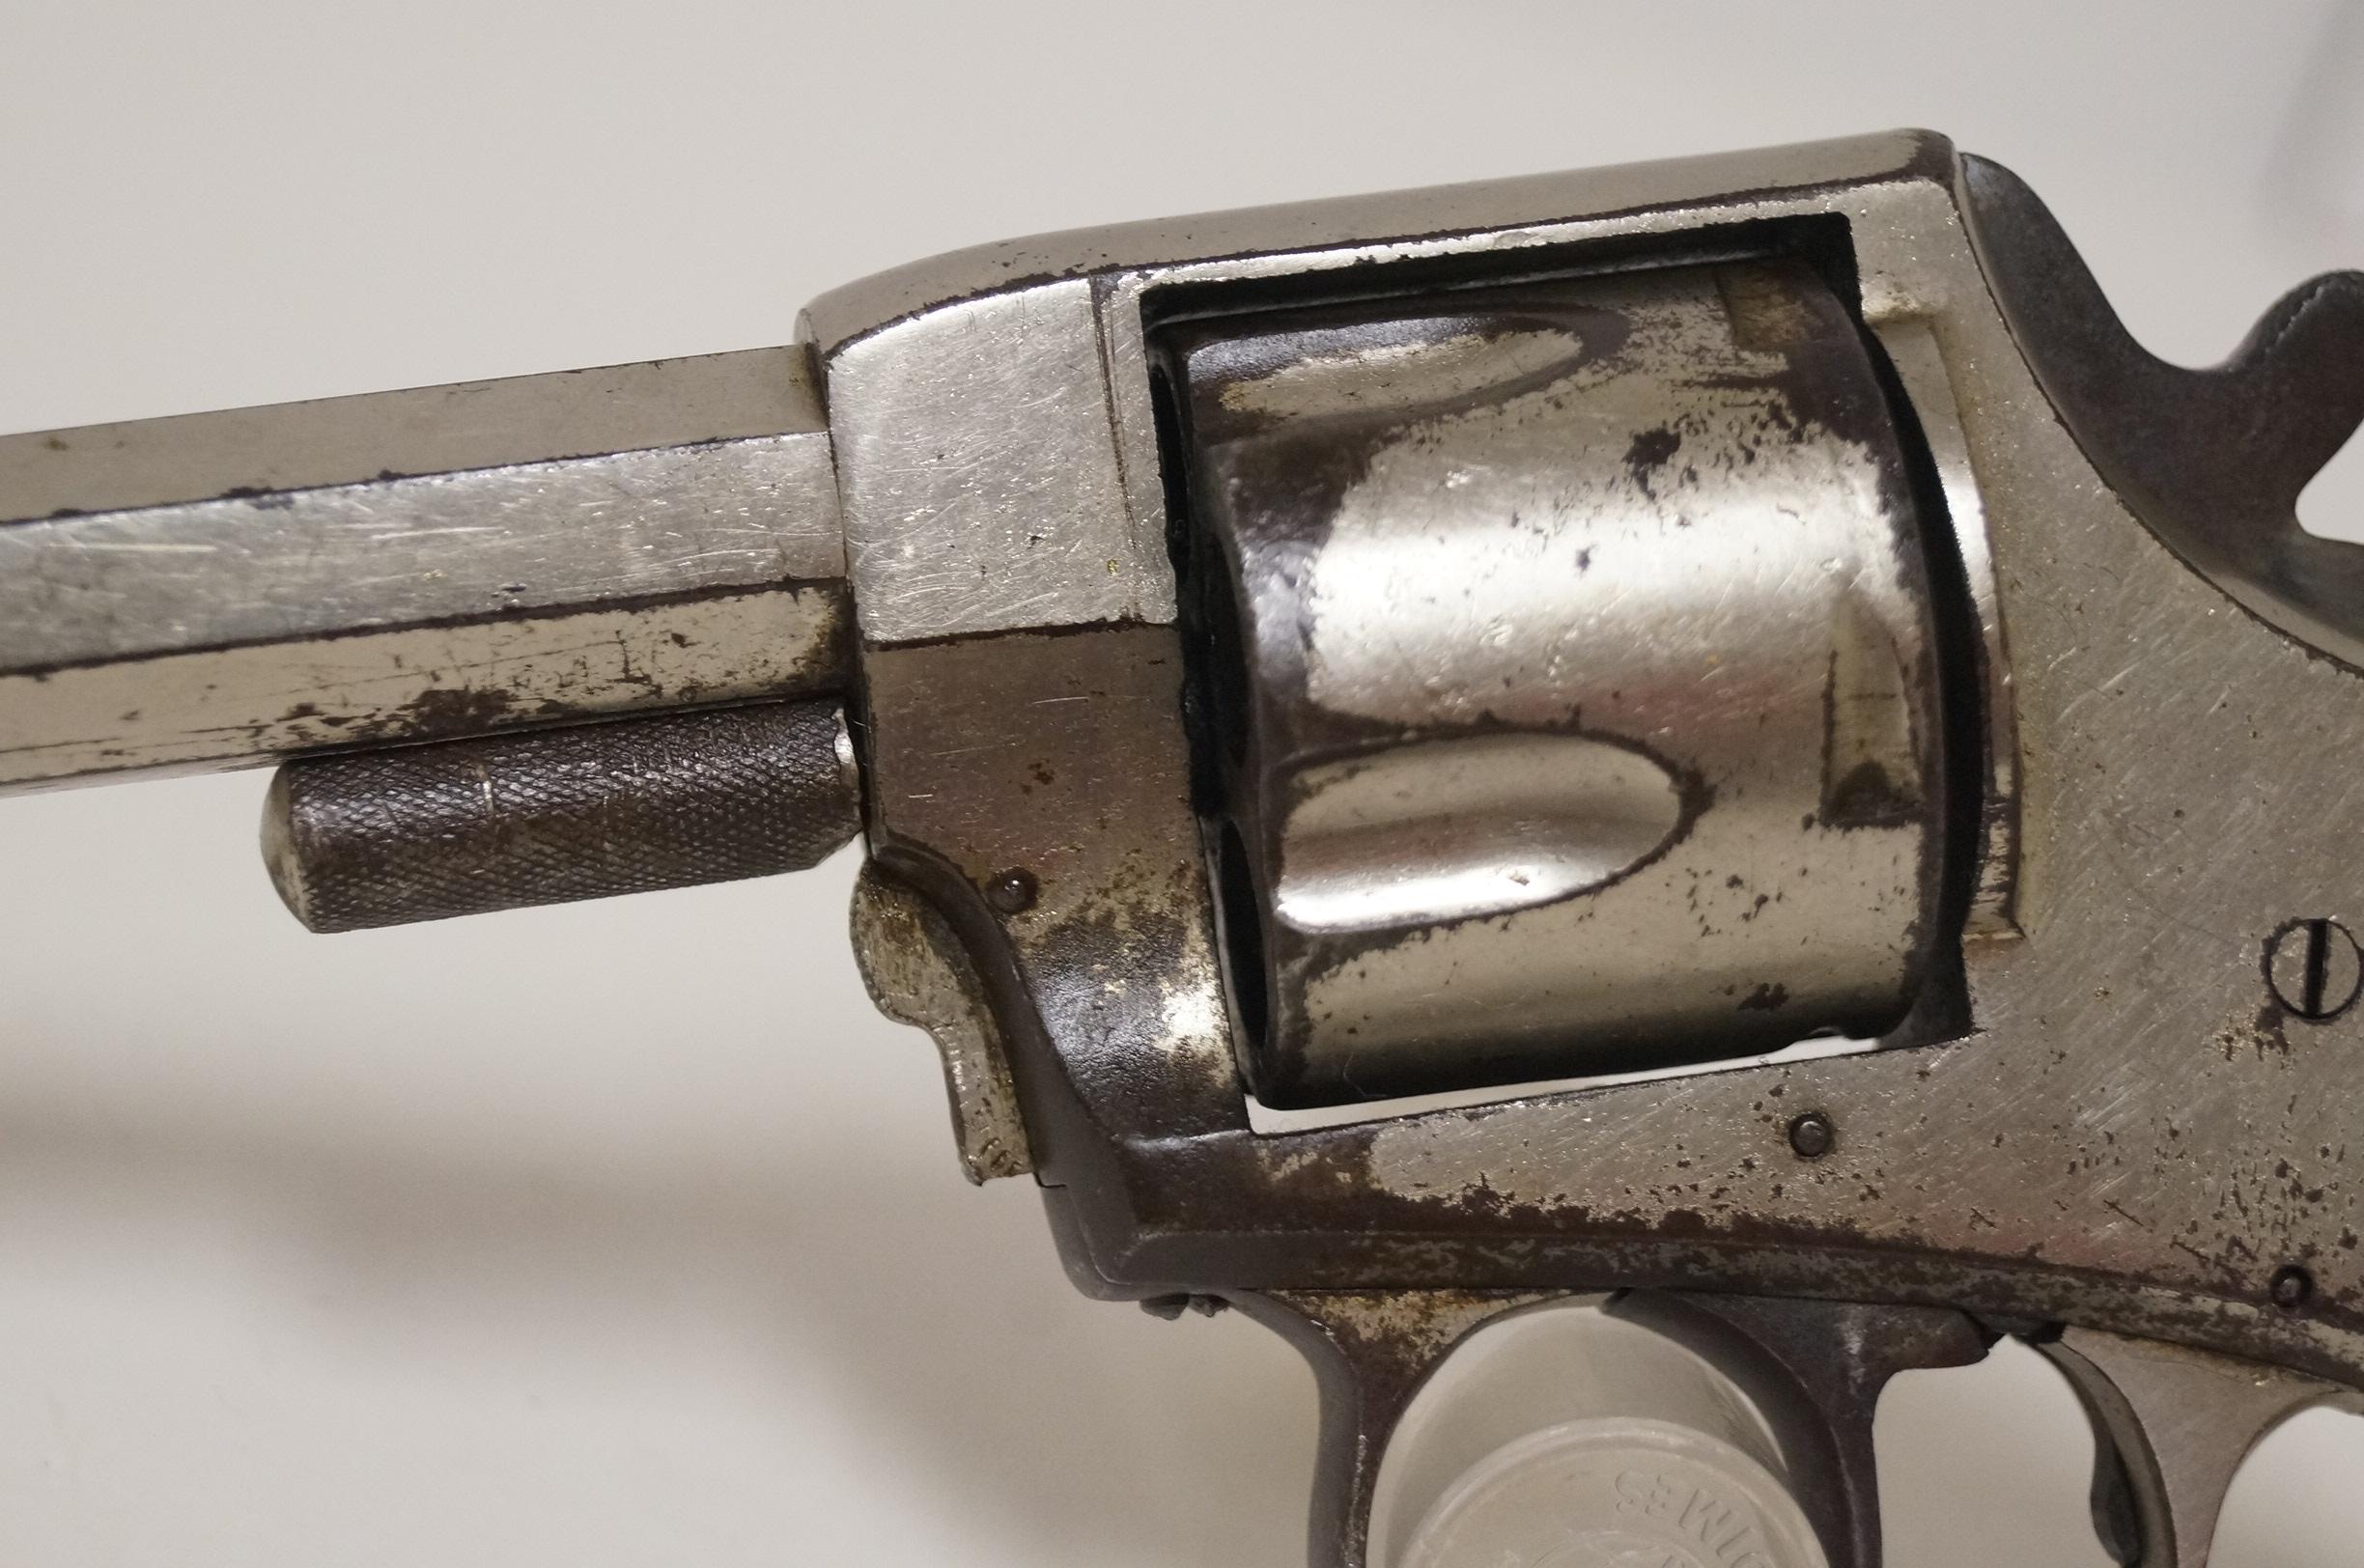 Lightning Express "Cowboy Gun" .44 Caliber 5 Shot DA Revolver